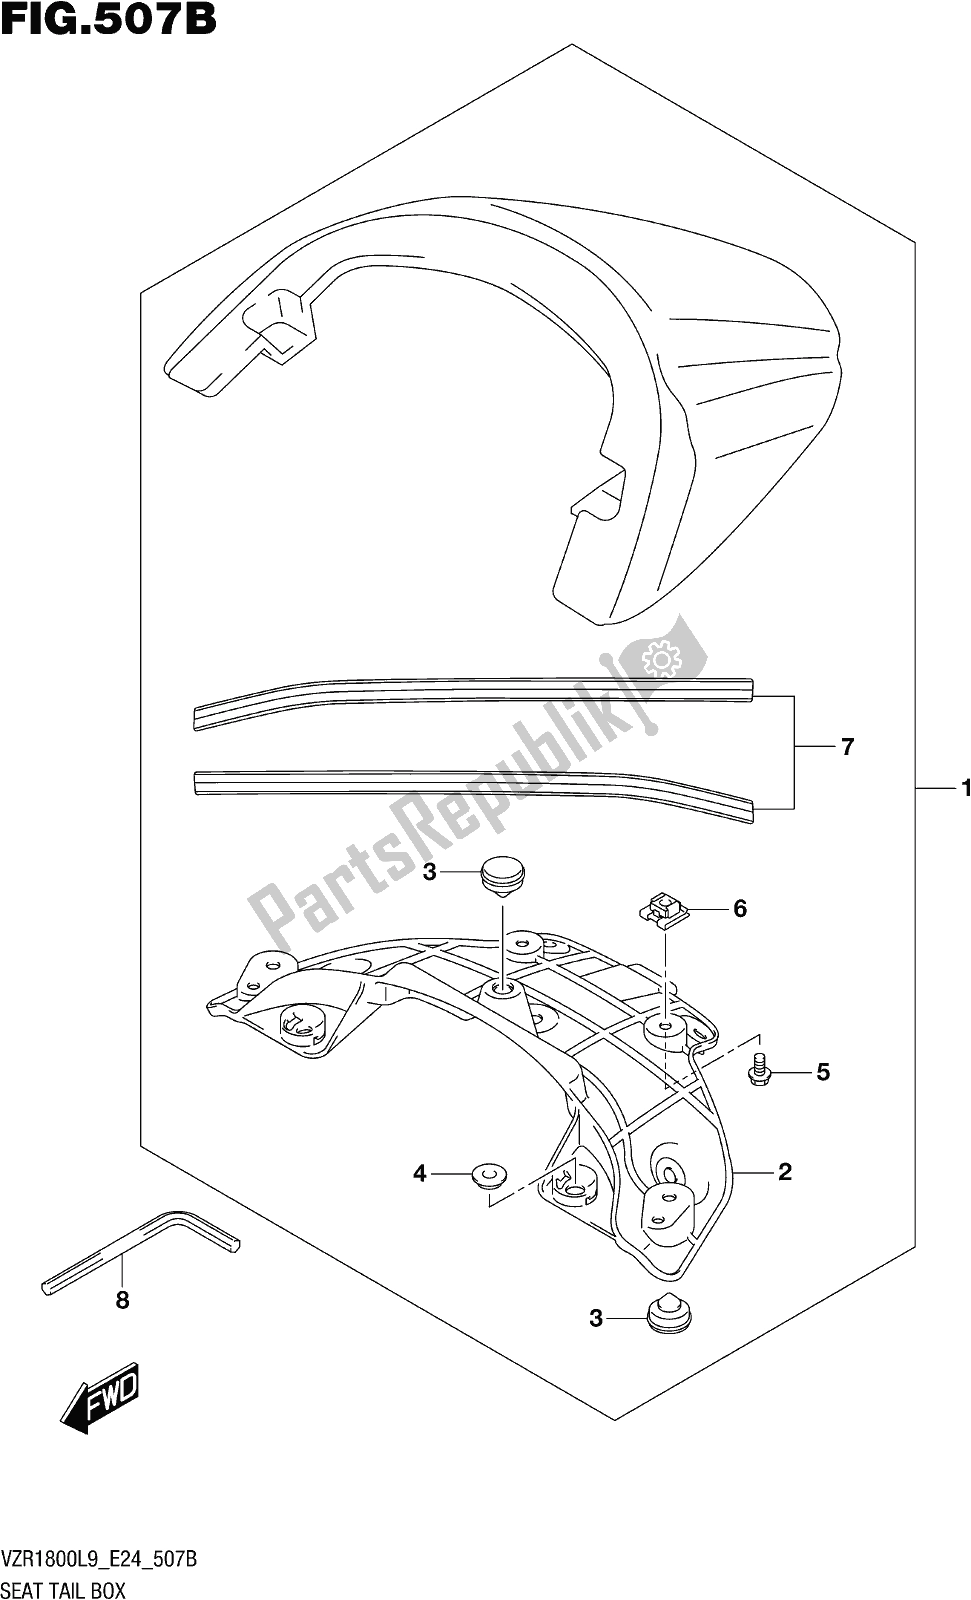 Toutes les pièces pour le Fig. 507b Seat Tail Box (vzr1800bzl9 E24) (ajp) du Suzuki VZR 1800 BZ 2019